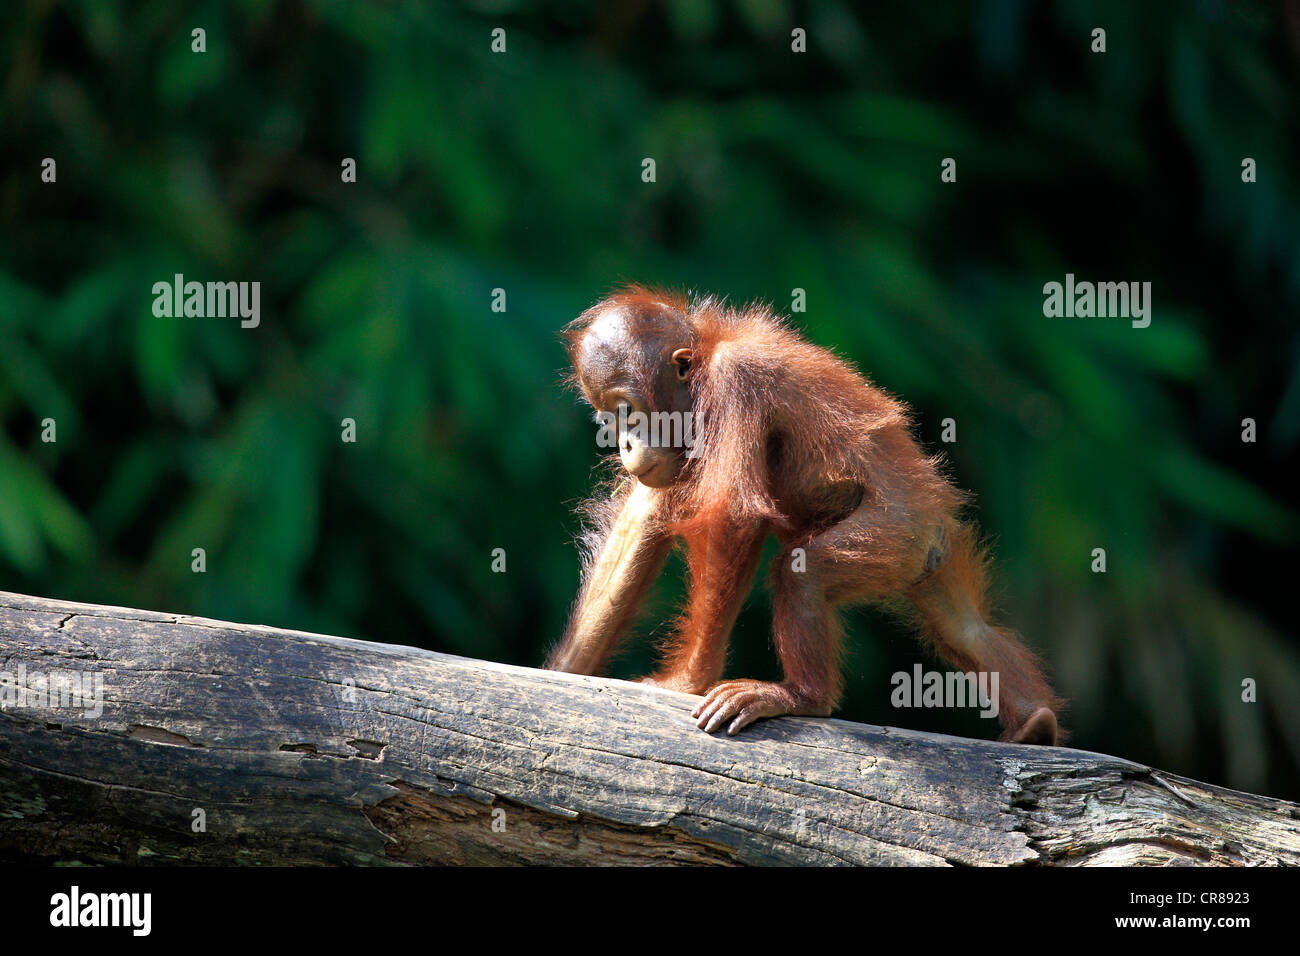 Orangutan (Pongo pygmaeus), young, Singapore, Asia Stock Photo